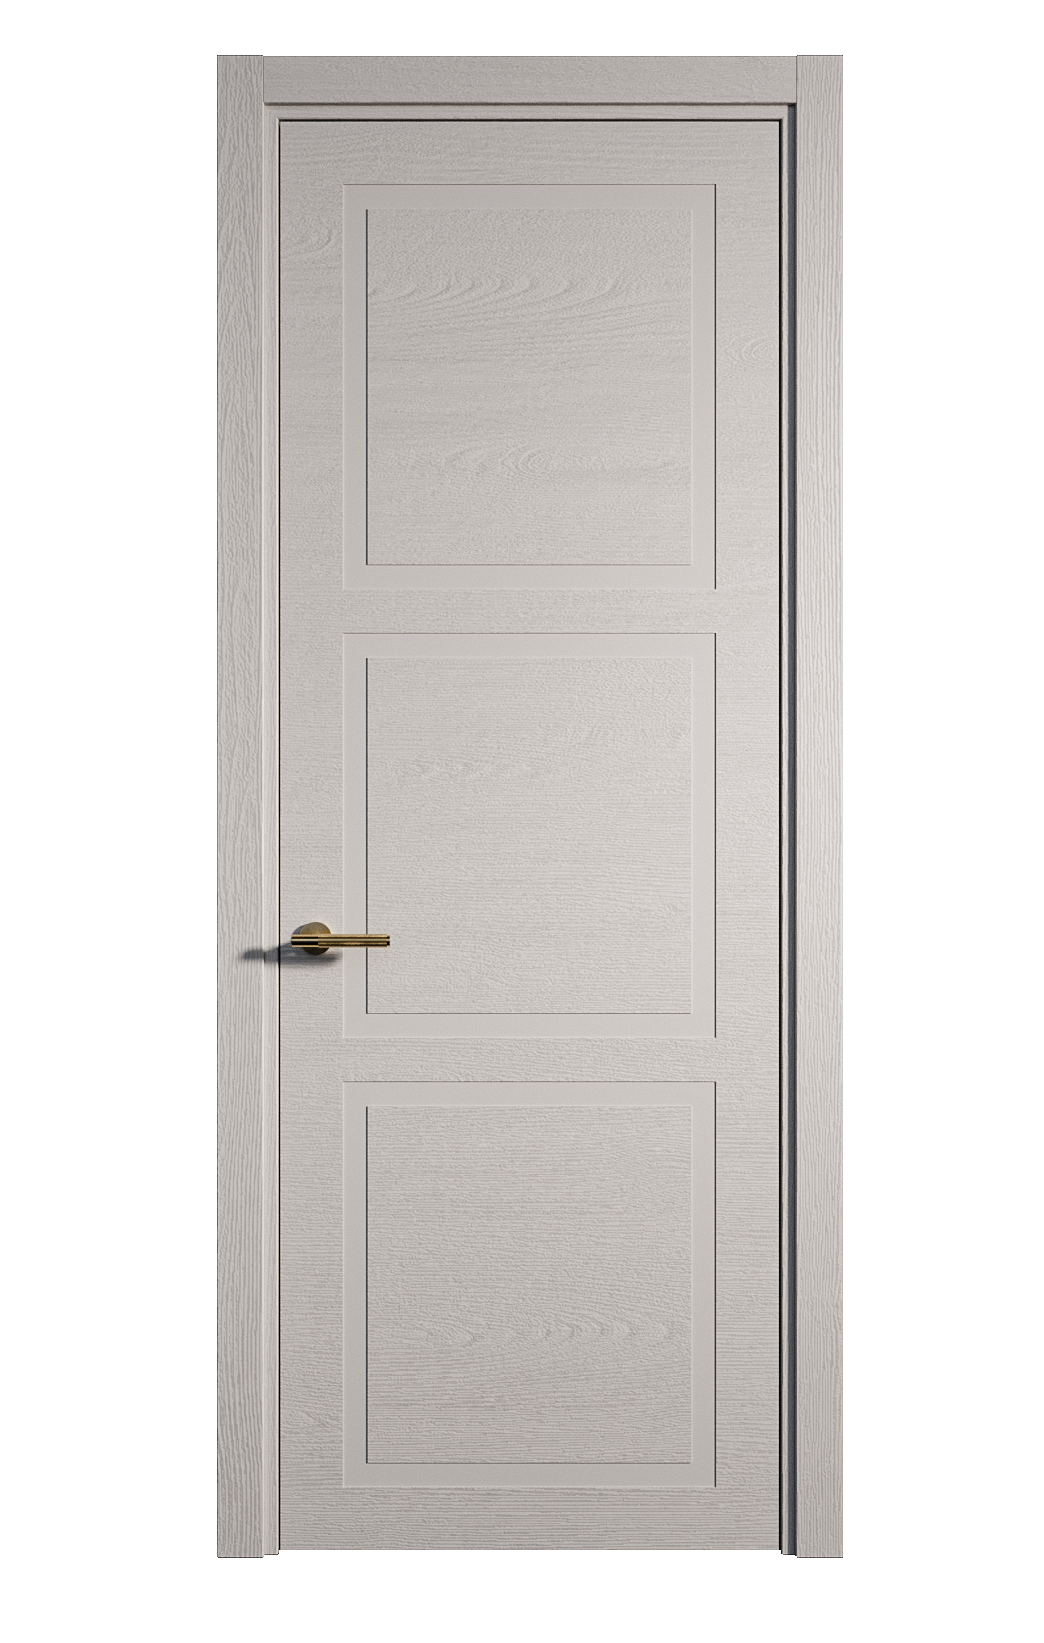 Межкомнатная дверь Бостон-3 глухая эмаль ral 7047 24473